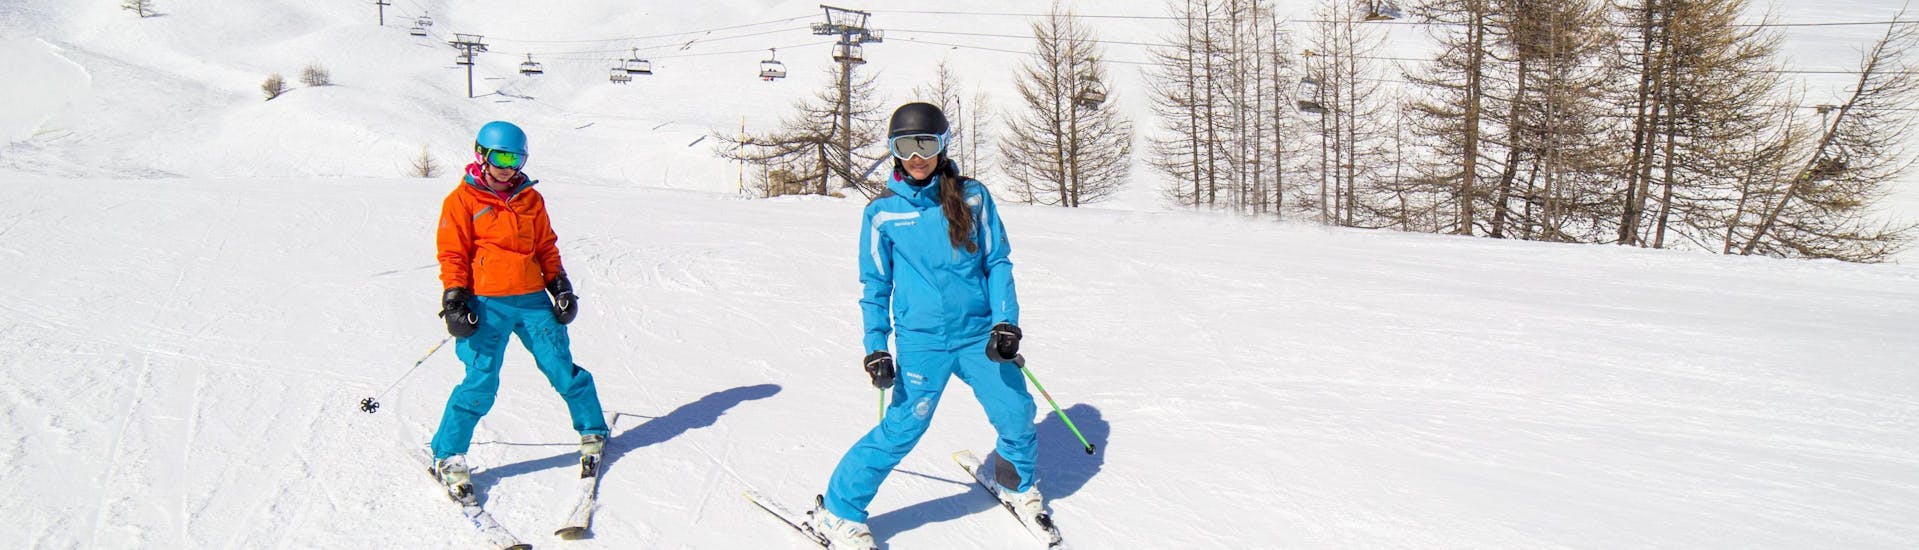 adult-ski-lessons-of-all-levels-high-season-360-samoens-hero